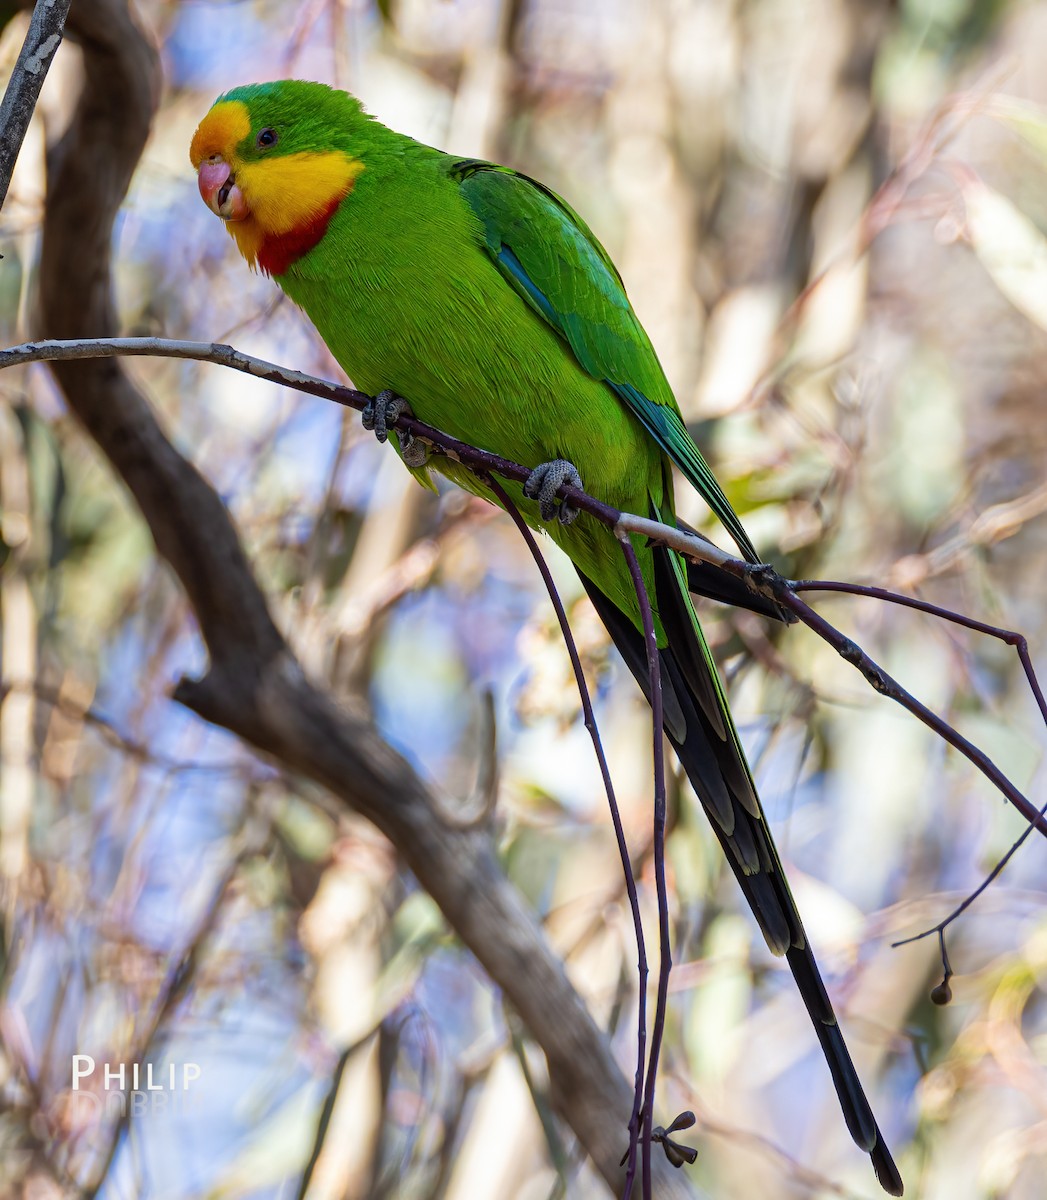 Superb Parrot - Philip Dubbin